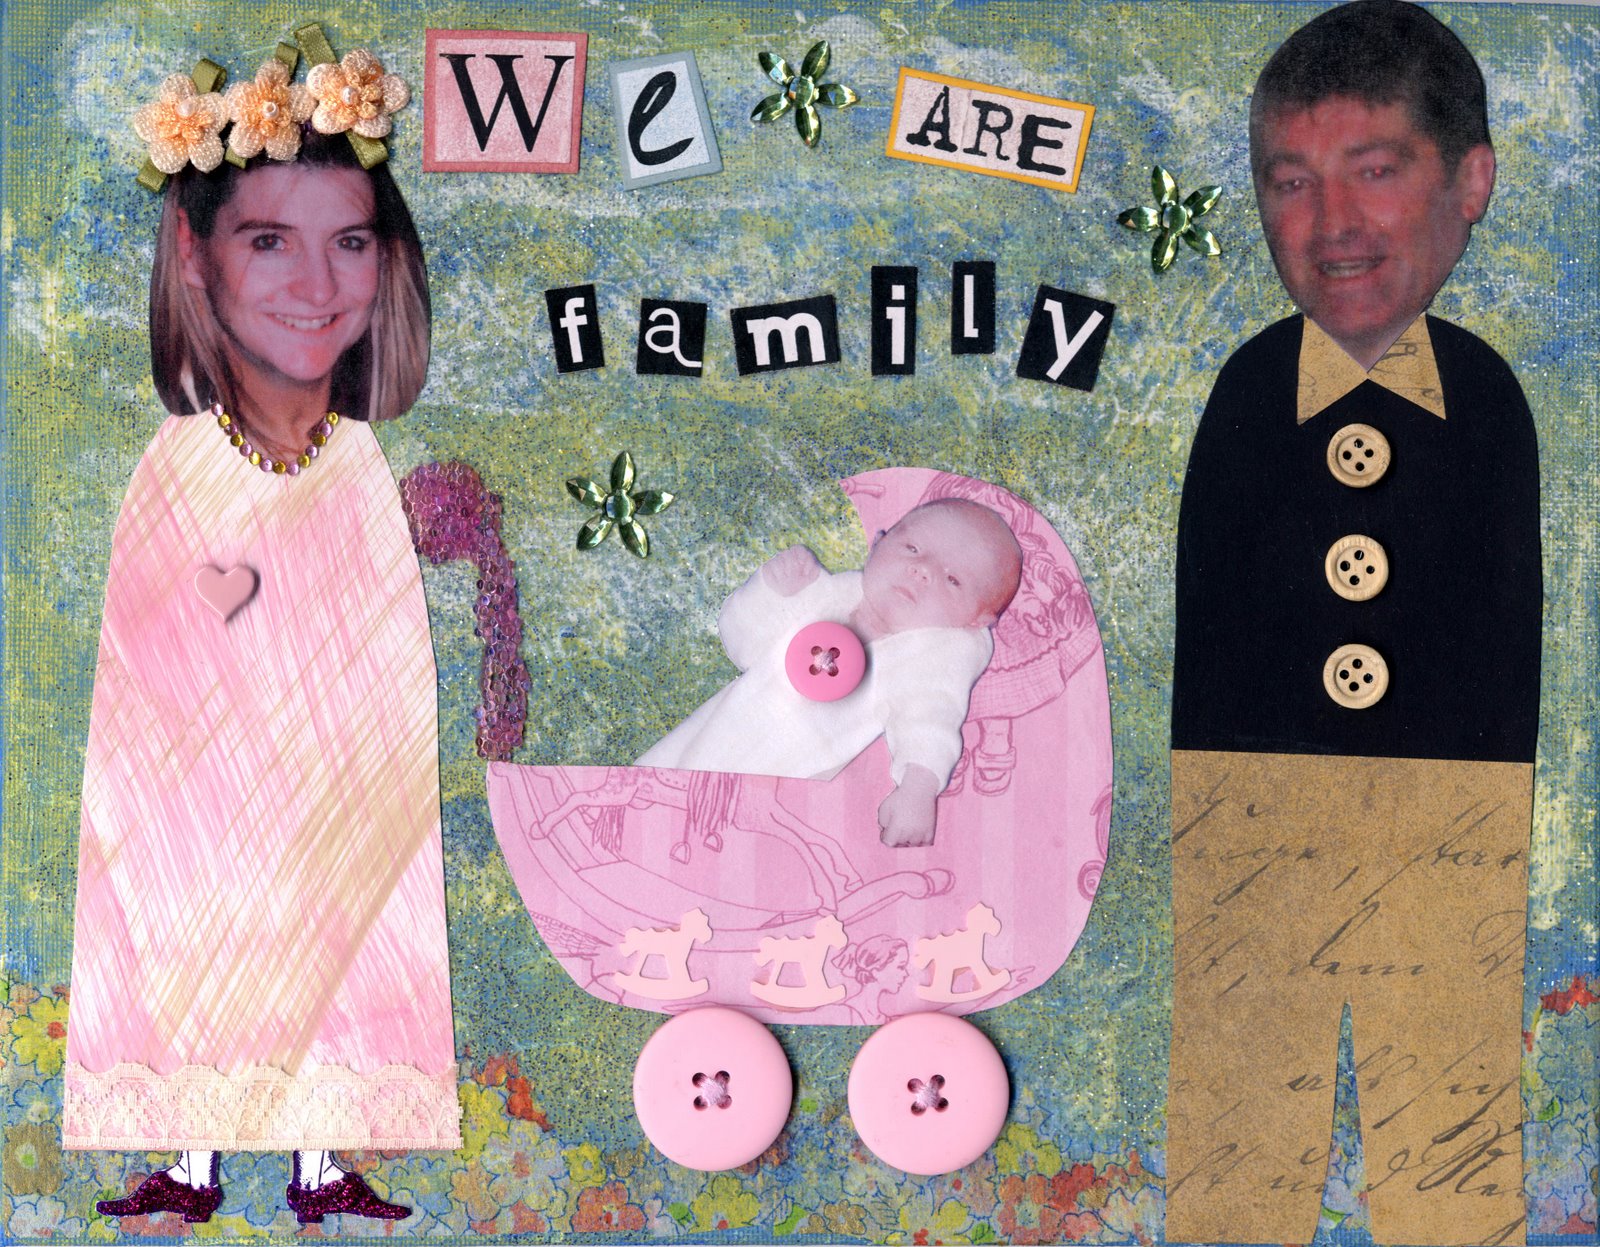 [We+are+family.jpg]